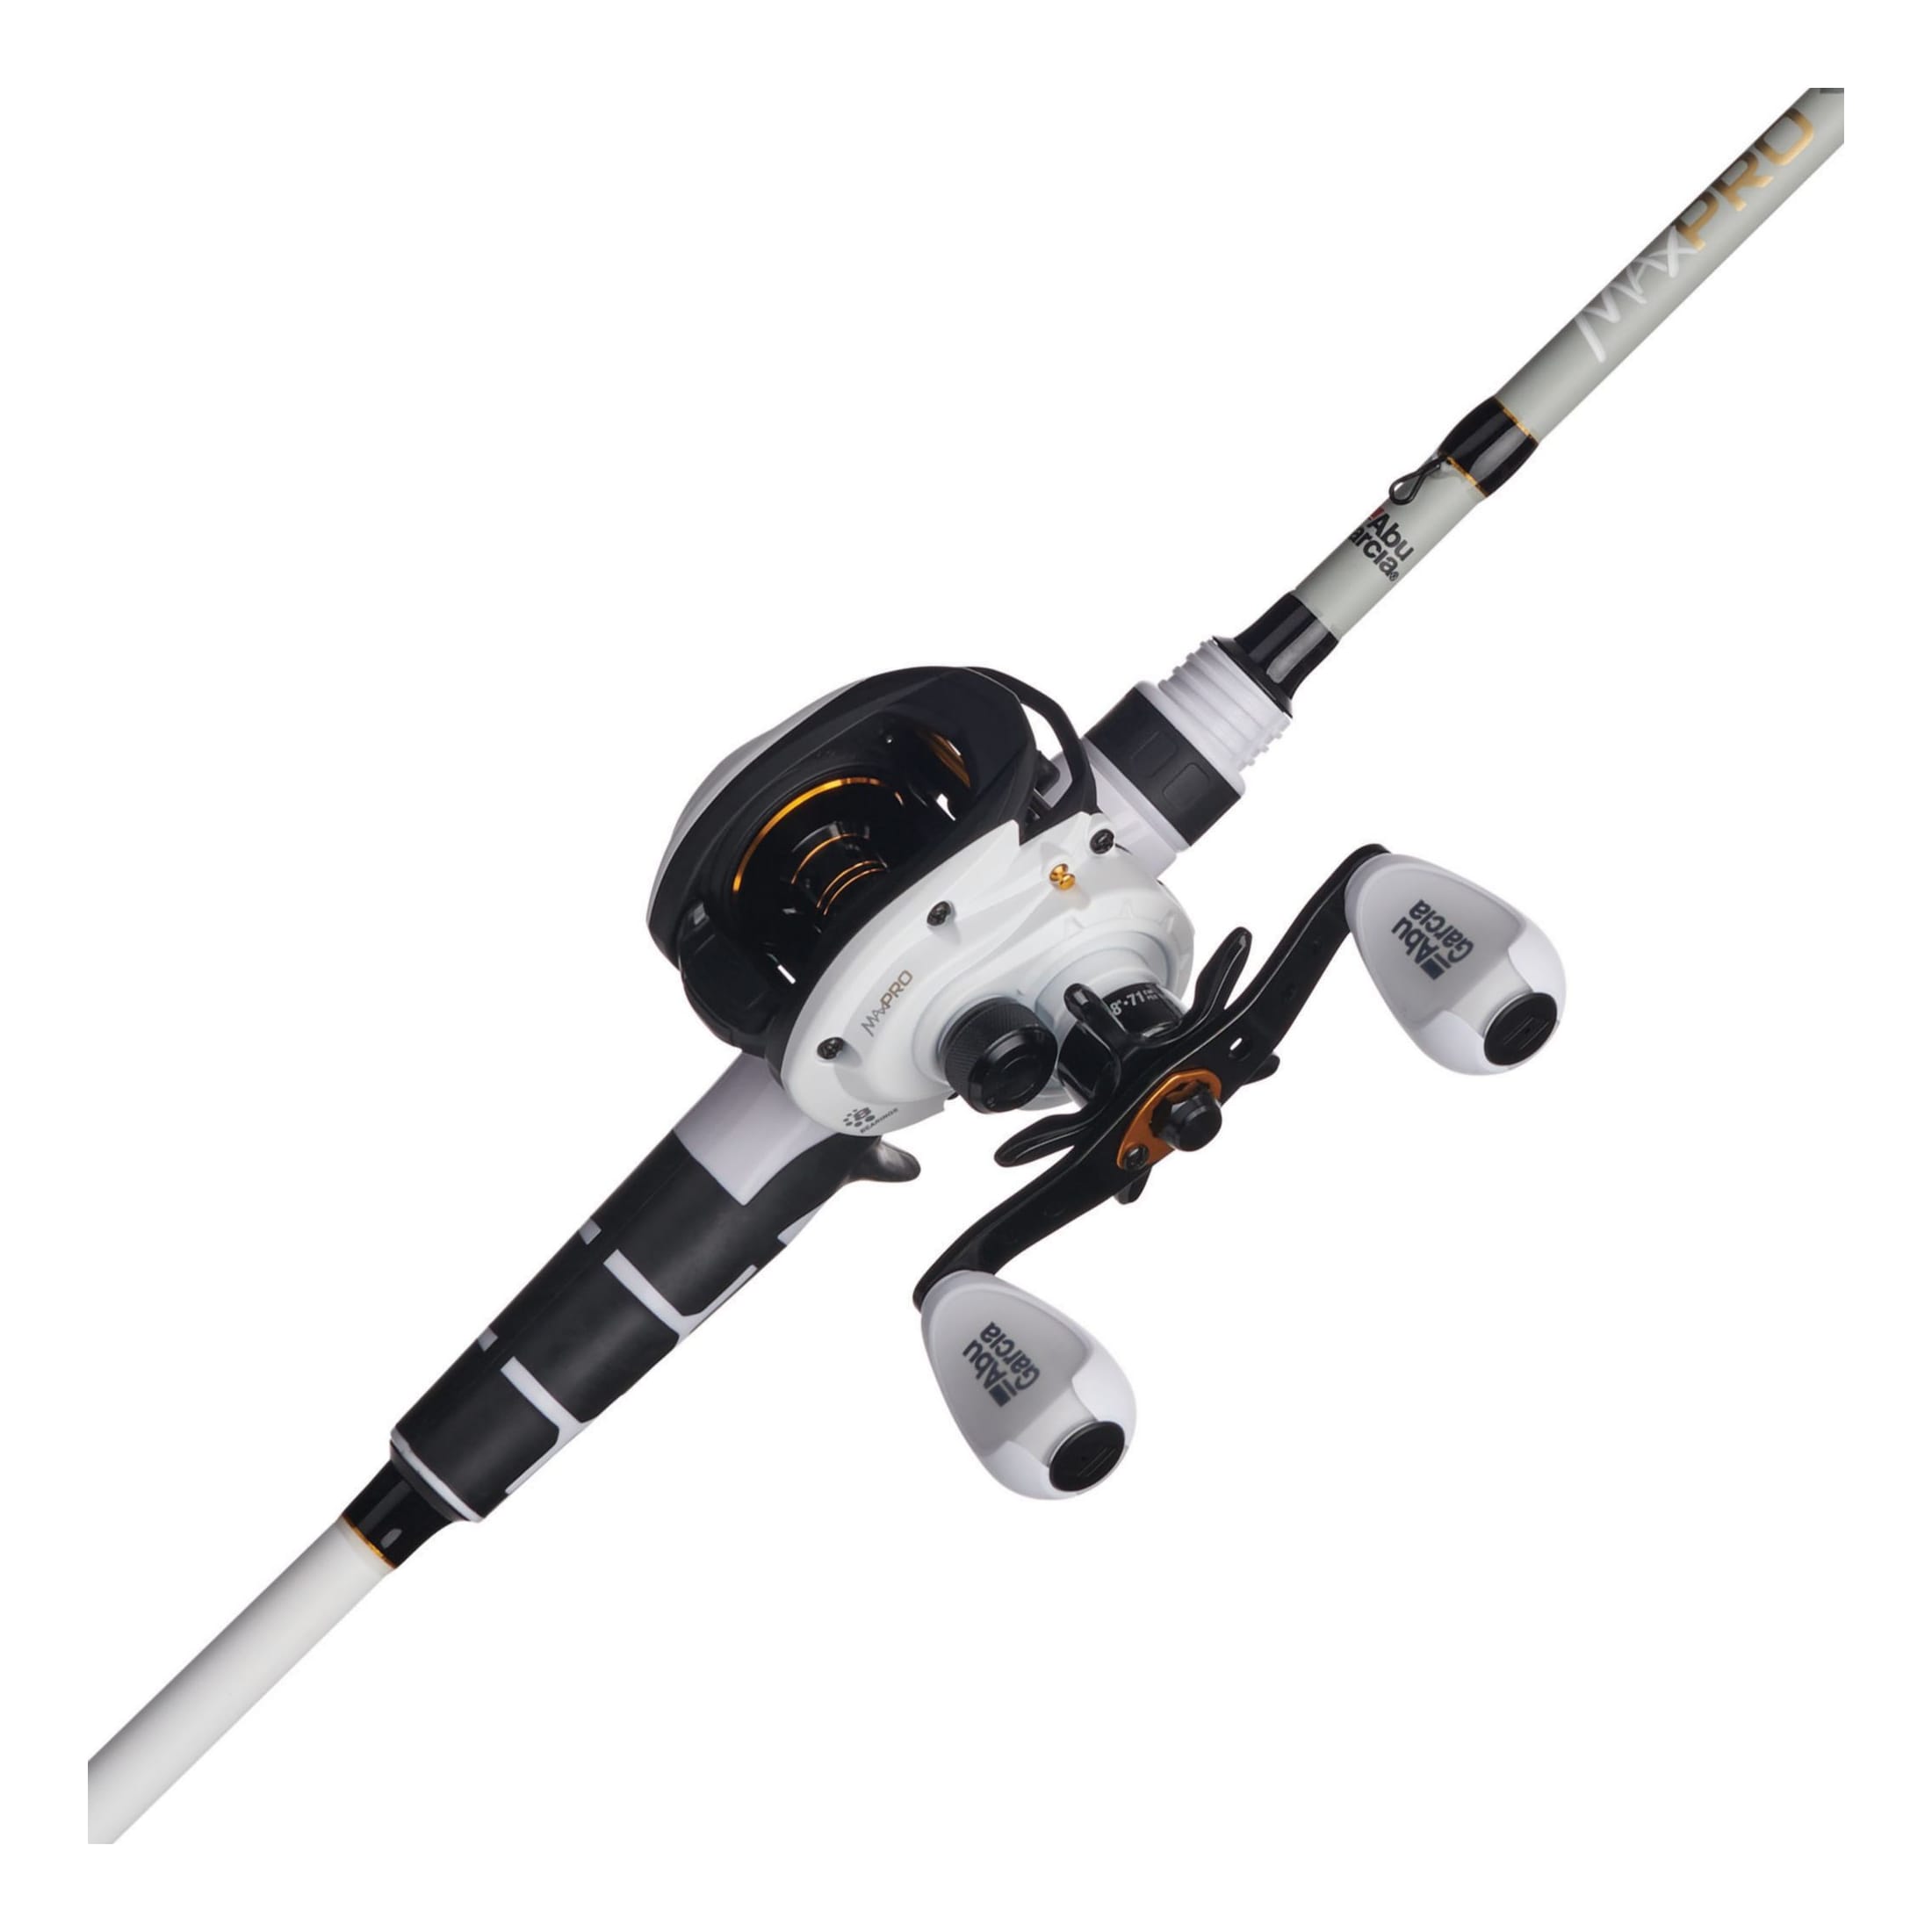 ABU GARCIA PRO Max Spinning Combo - Fishing Rod & Reel £89.99